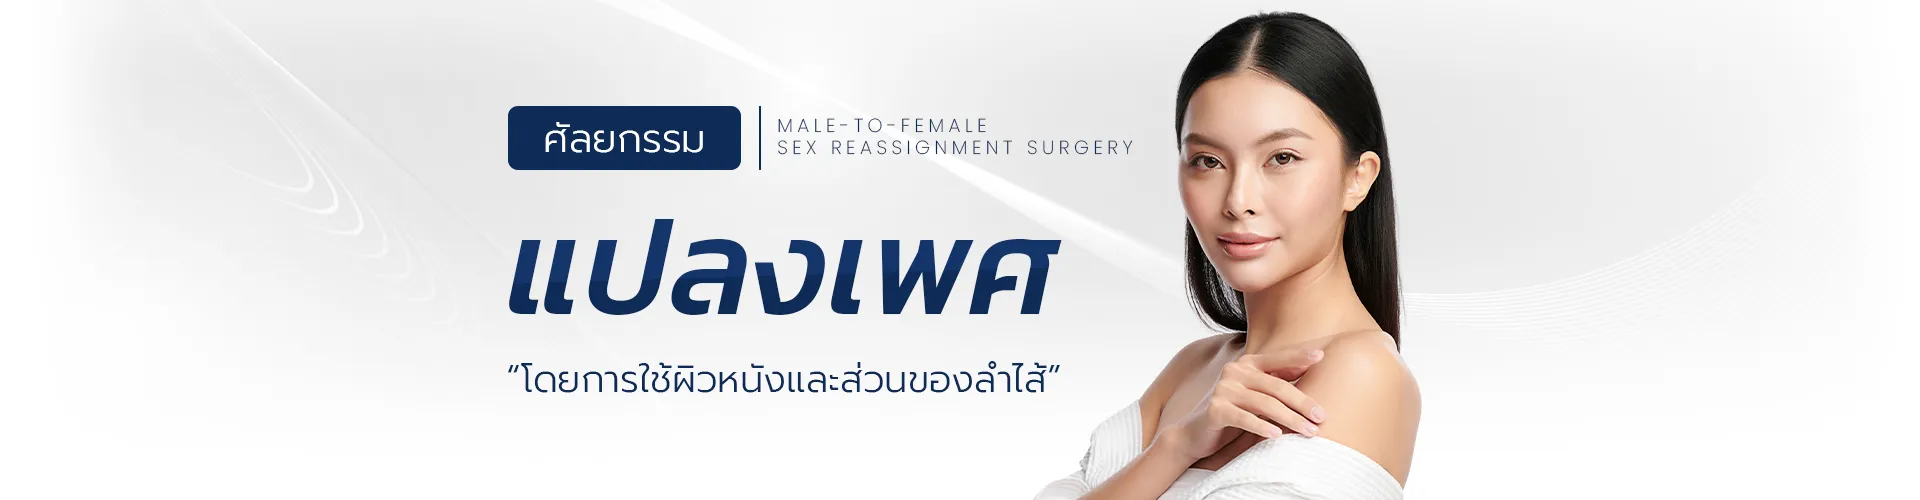 การผ่าตัดแปลงเพศชายเป็นหญิง, โรง พยาบาล ศัลยกรรม